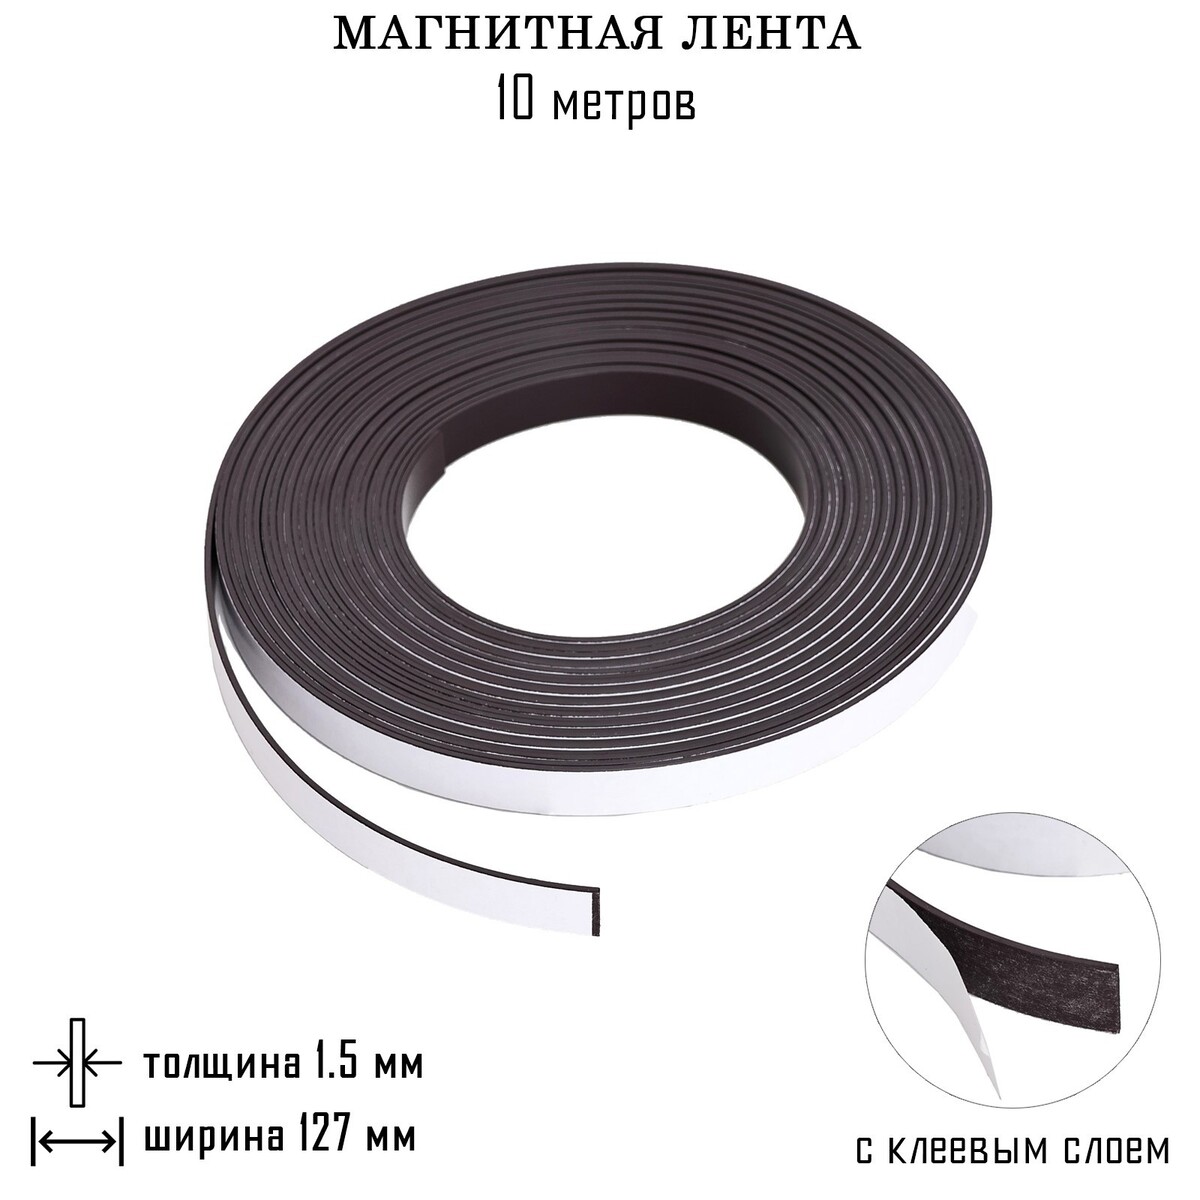 Магнитная лента, с клеевым слоем, 10 метров, толщина 1.5 мм, ширина 12.7 см магнитная лента с клеевым слоем 10 метров толщина 1 5 мм ширина 12 7 см